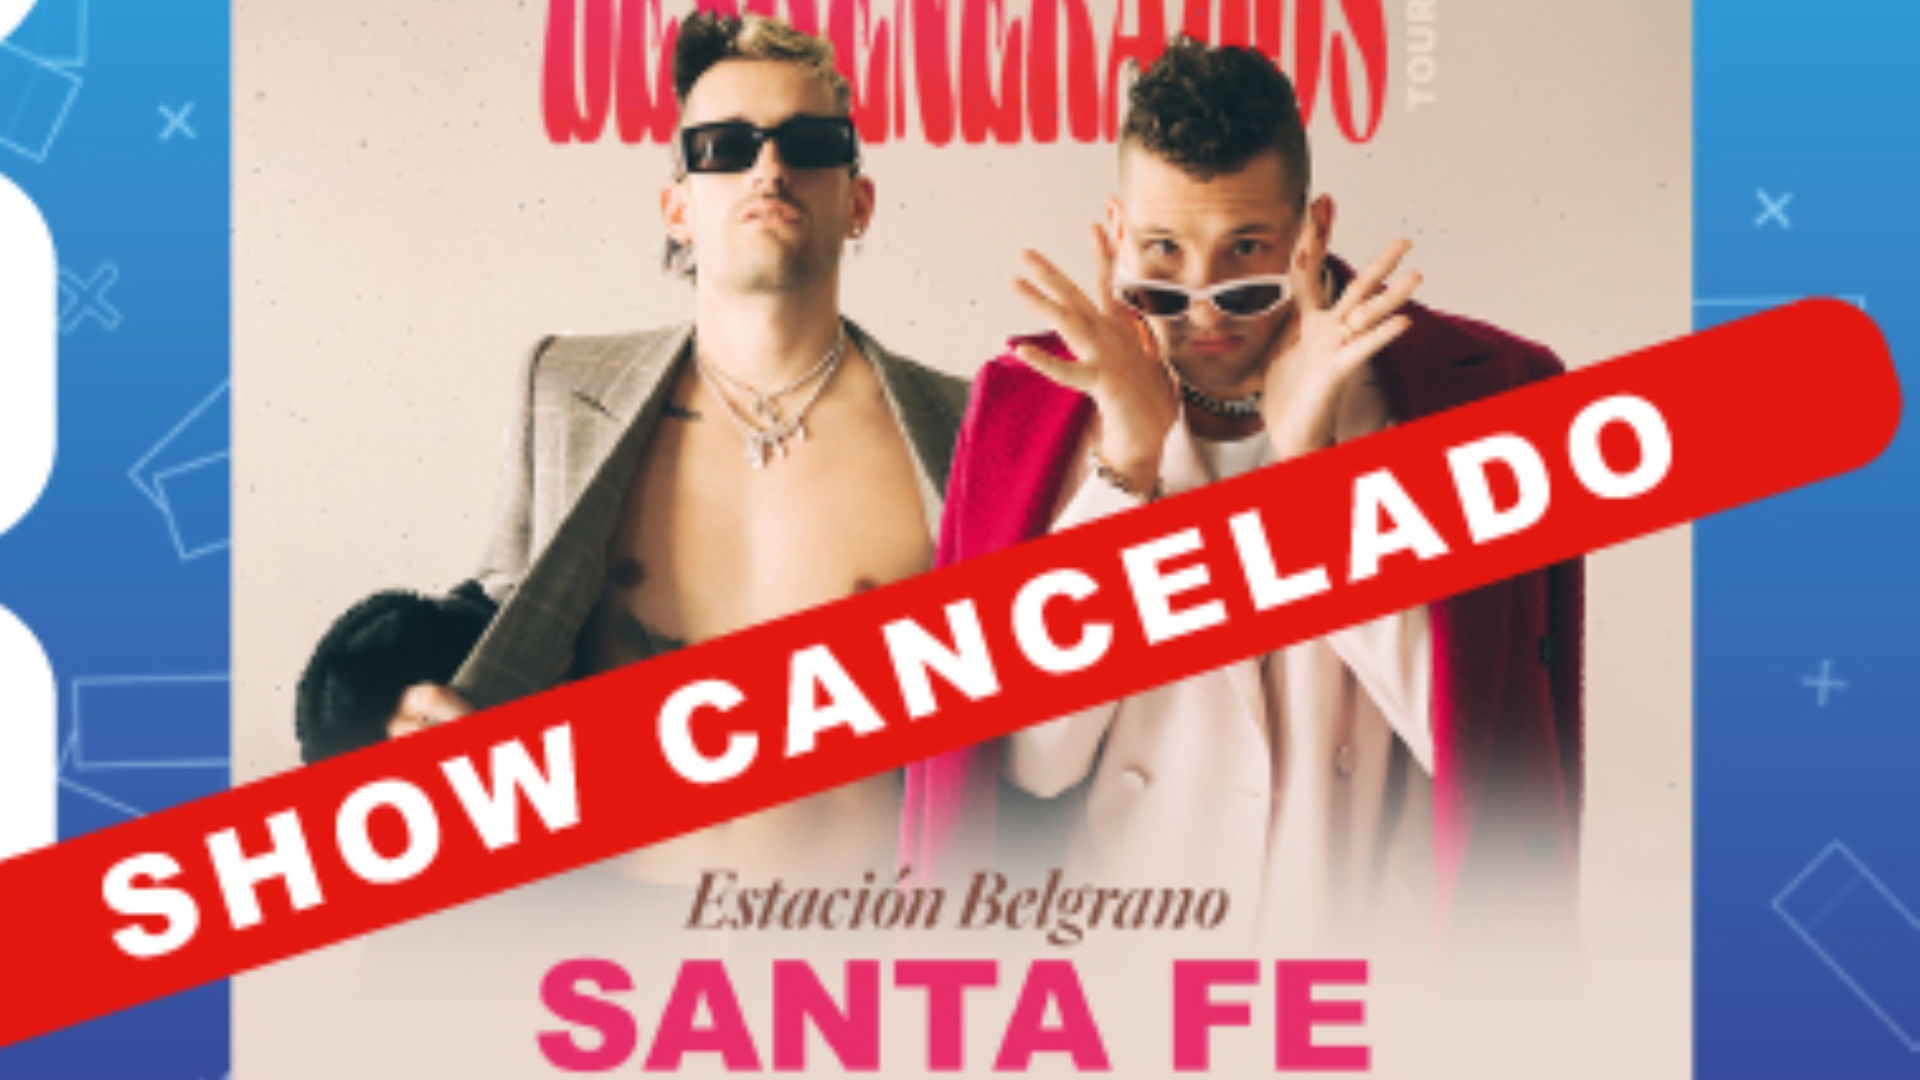 El sitio Platea Vip confirmó la cancelación del show de Mau y Ricky en Santa Fe